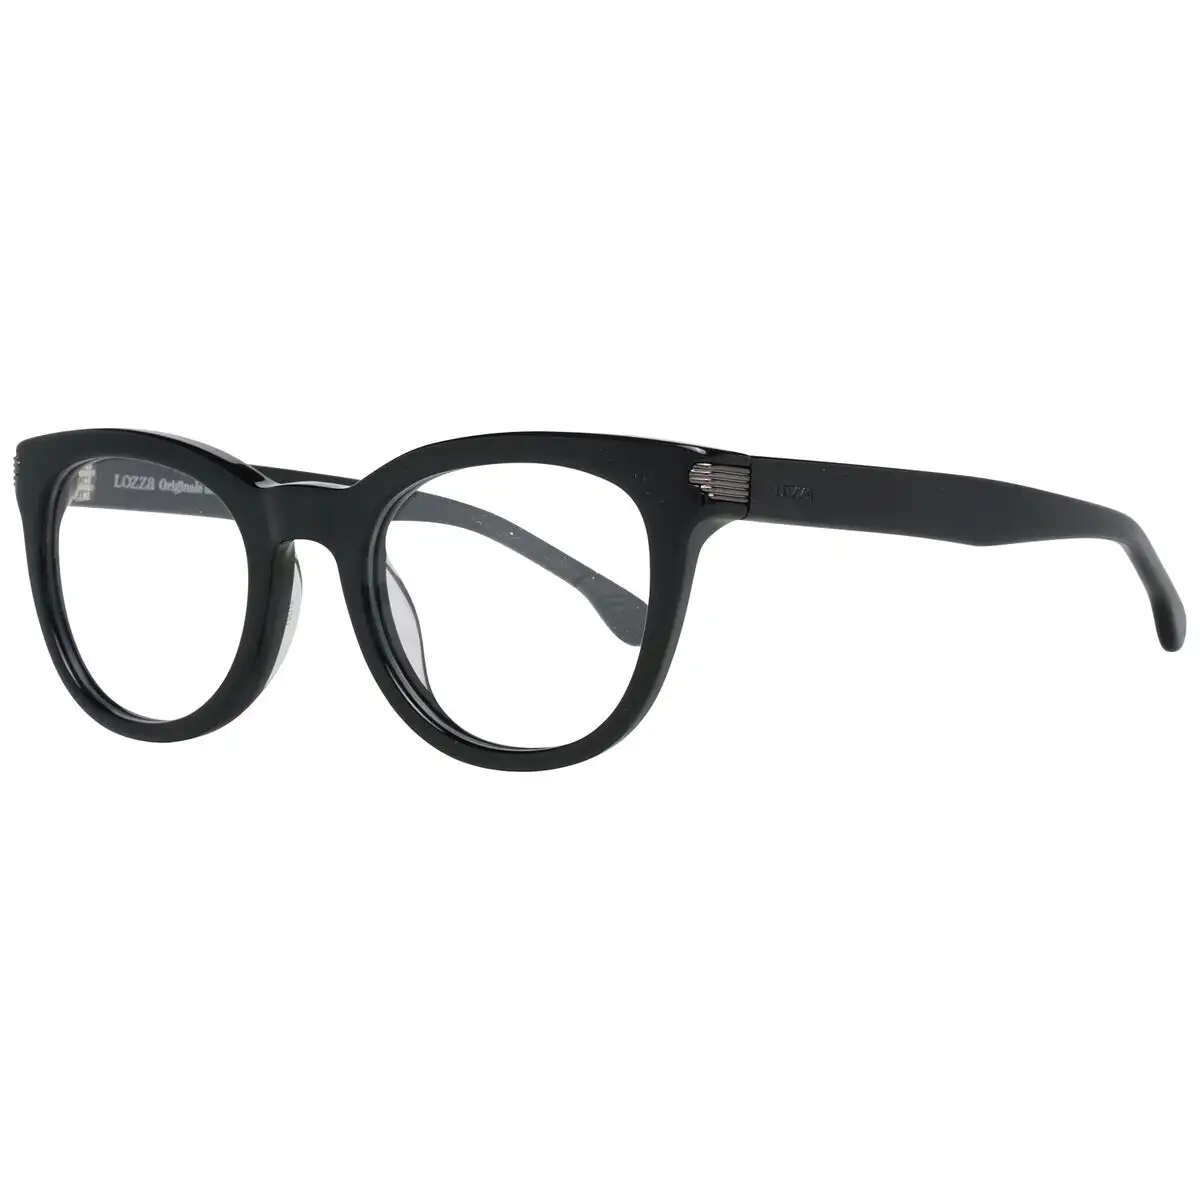 Monture de lunettes femme lozza vl4124 47blky_4048. DIAYTAR SENEGAL - L'Odyssée du Shopping à Votre Portée. Parcourez notre boutique en ligne et partez à la découverte d'articles qui rendront chaque jour spécial.